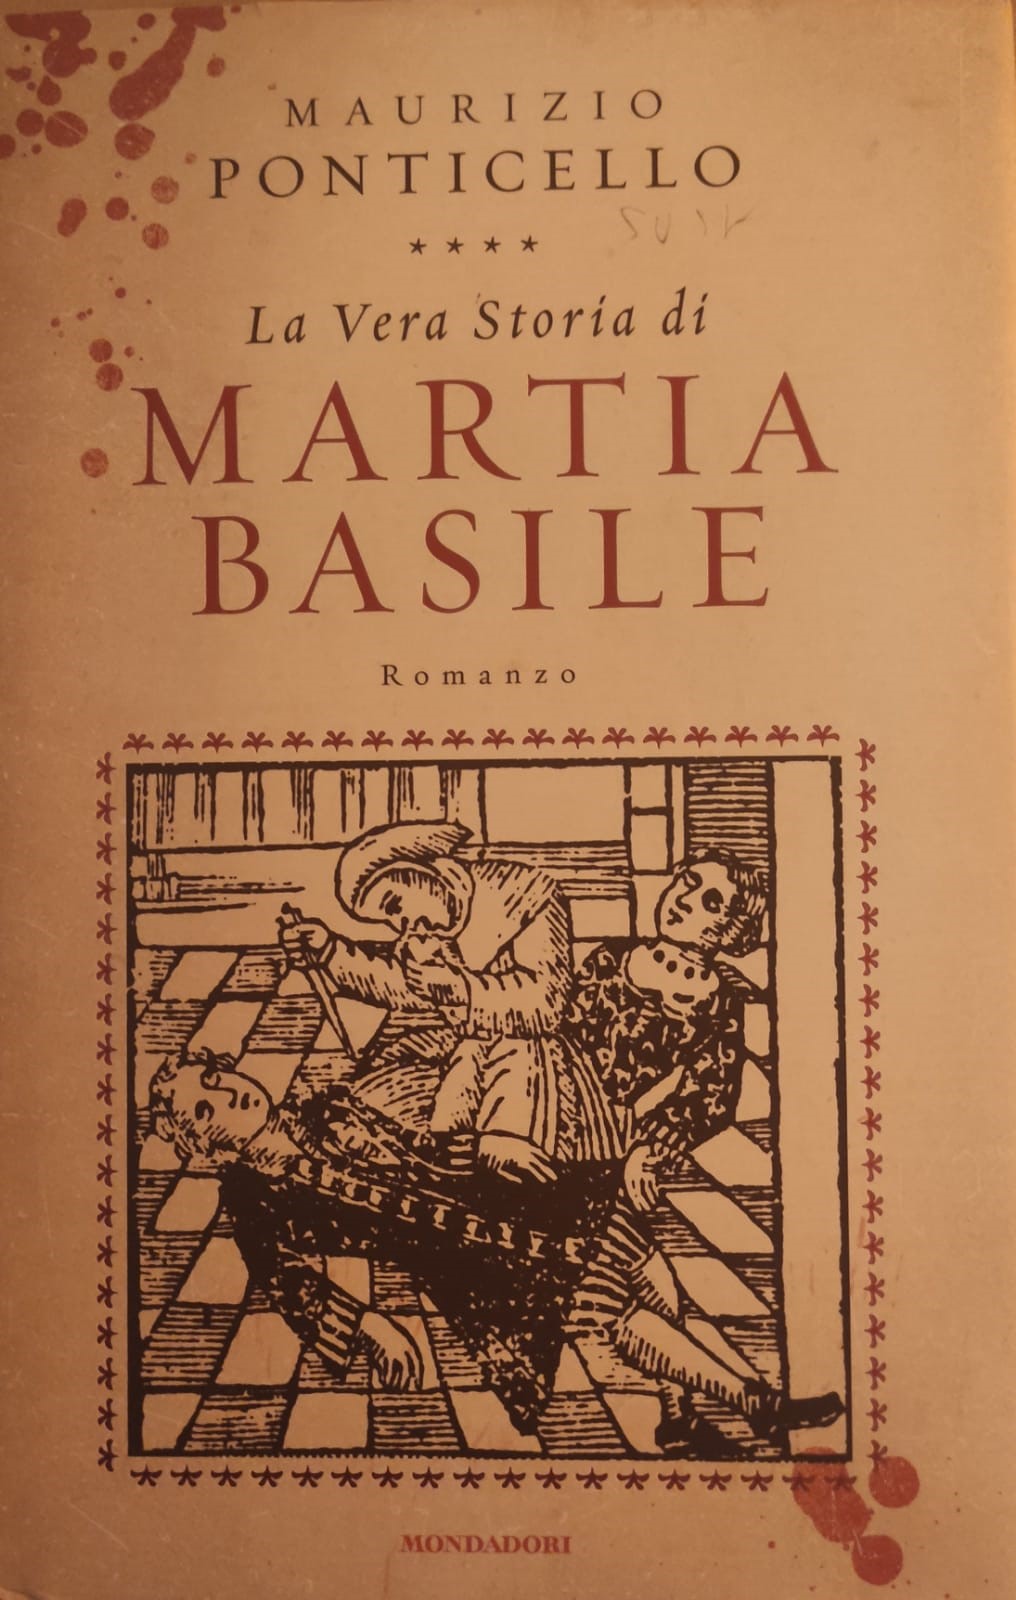 NOLA. Incontro con l’autore: sotto i riflettori, La vera storia di Martia Basile.  Incontro dibattito con Mauro Ponticello, al Masullo Theti